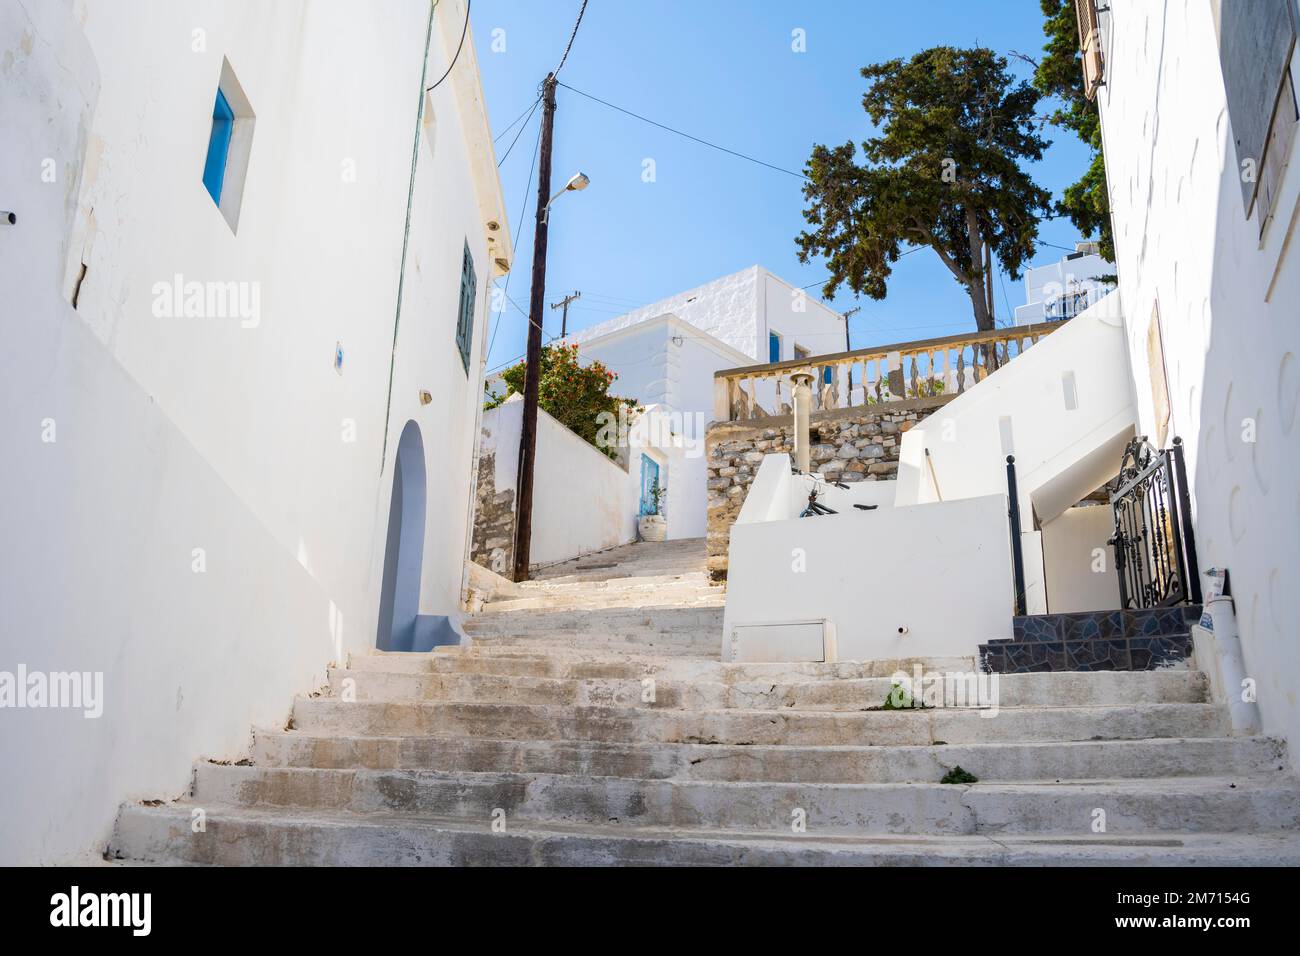 White houses, town of Astypalea, Southern Sporades, Aegean Sea, Greece Stock Photo